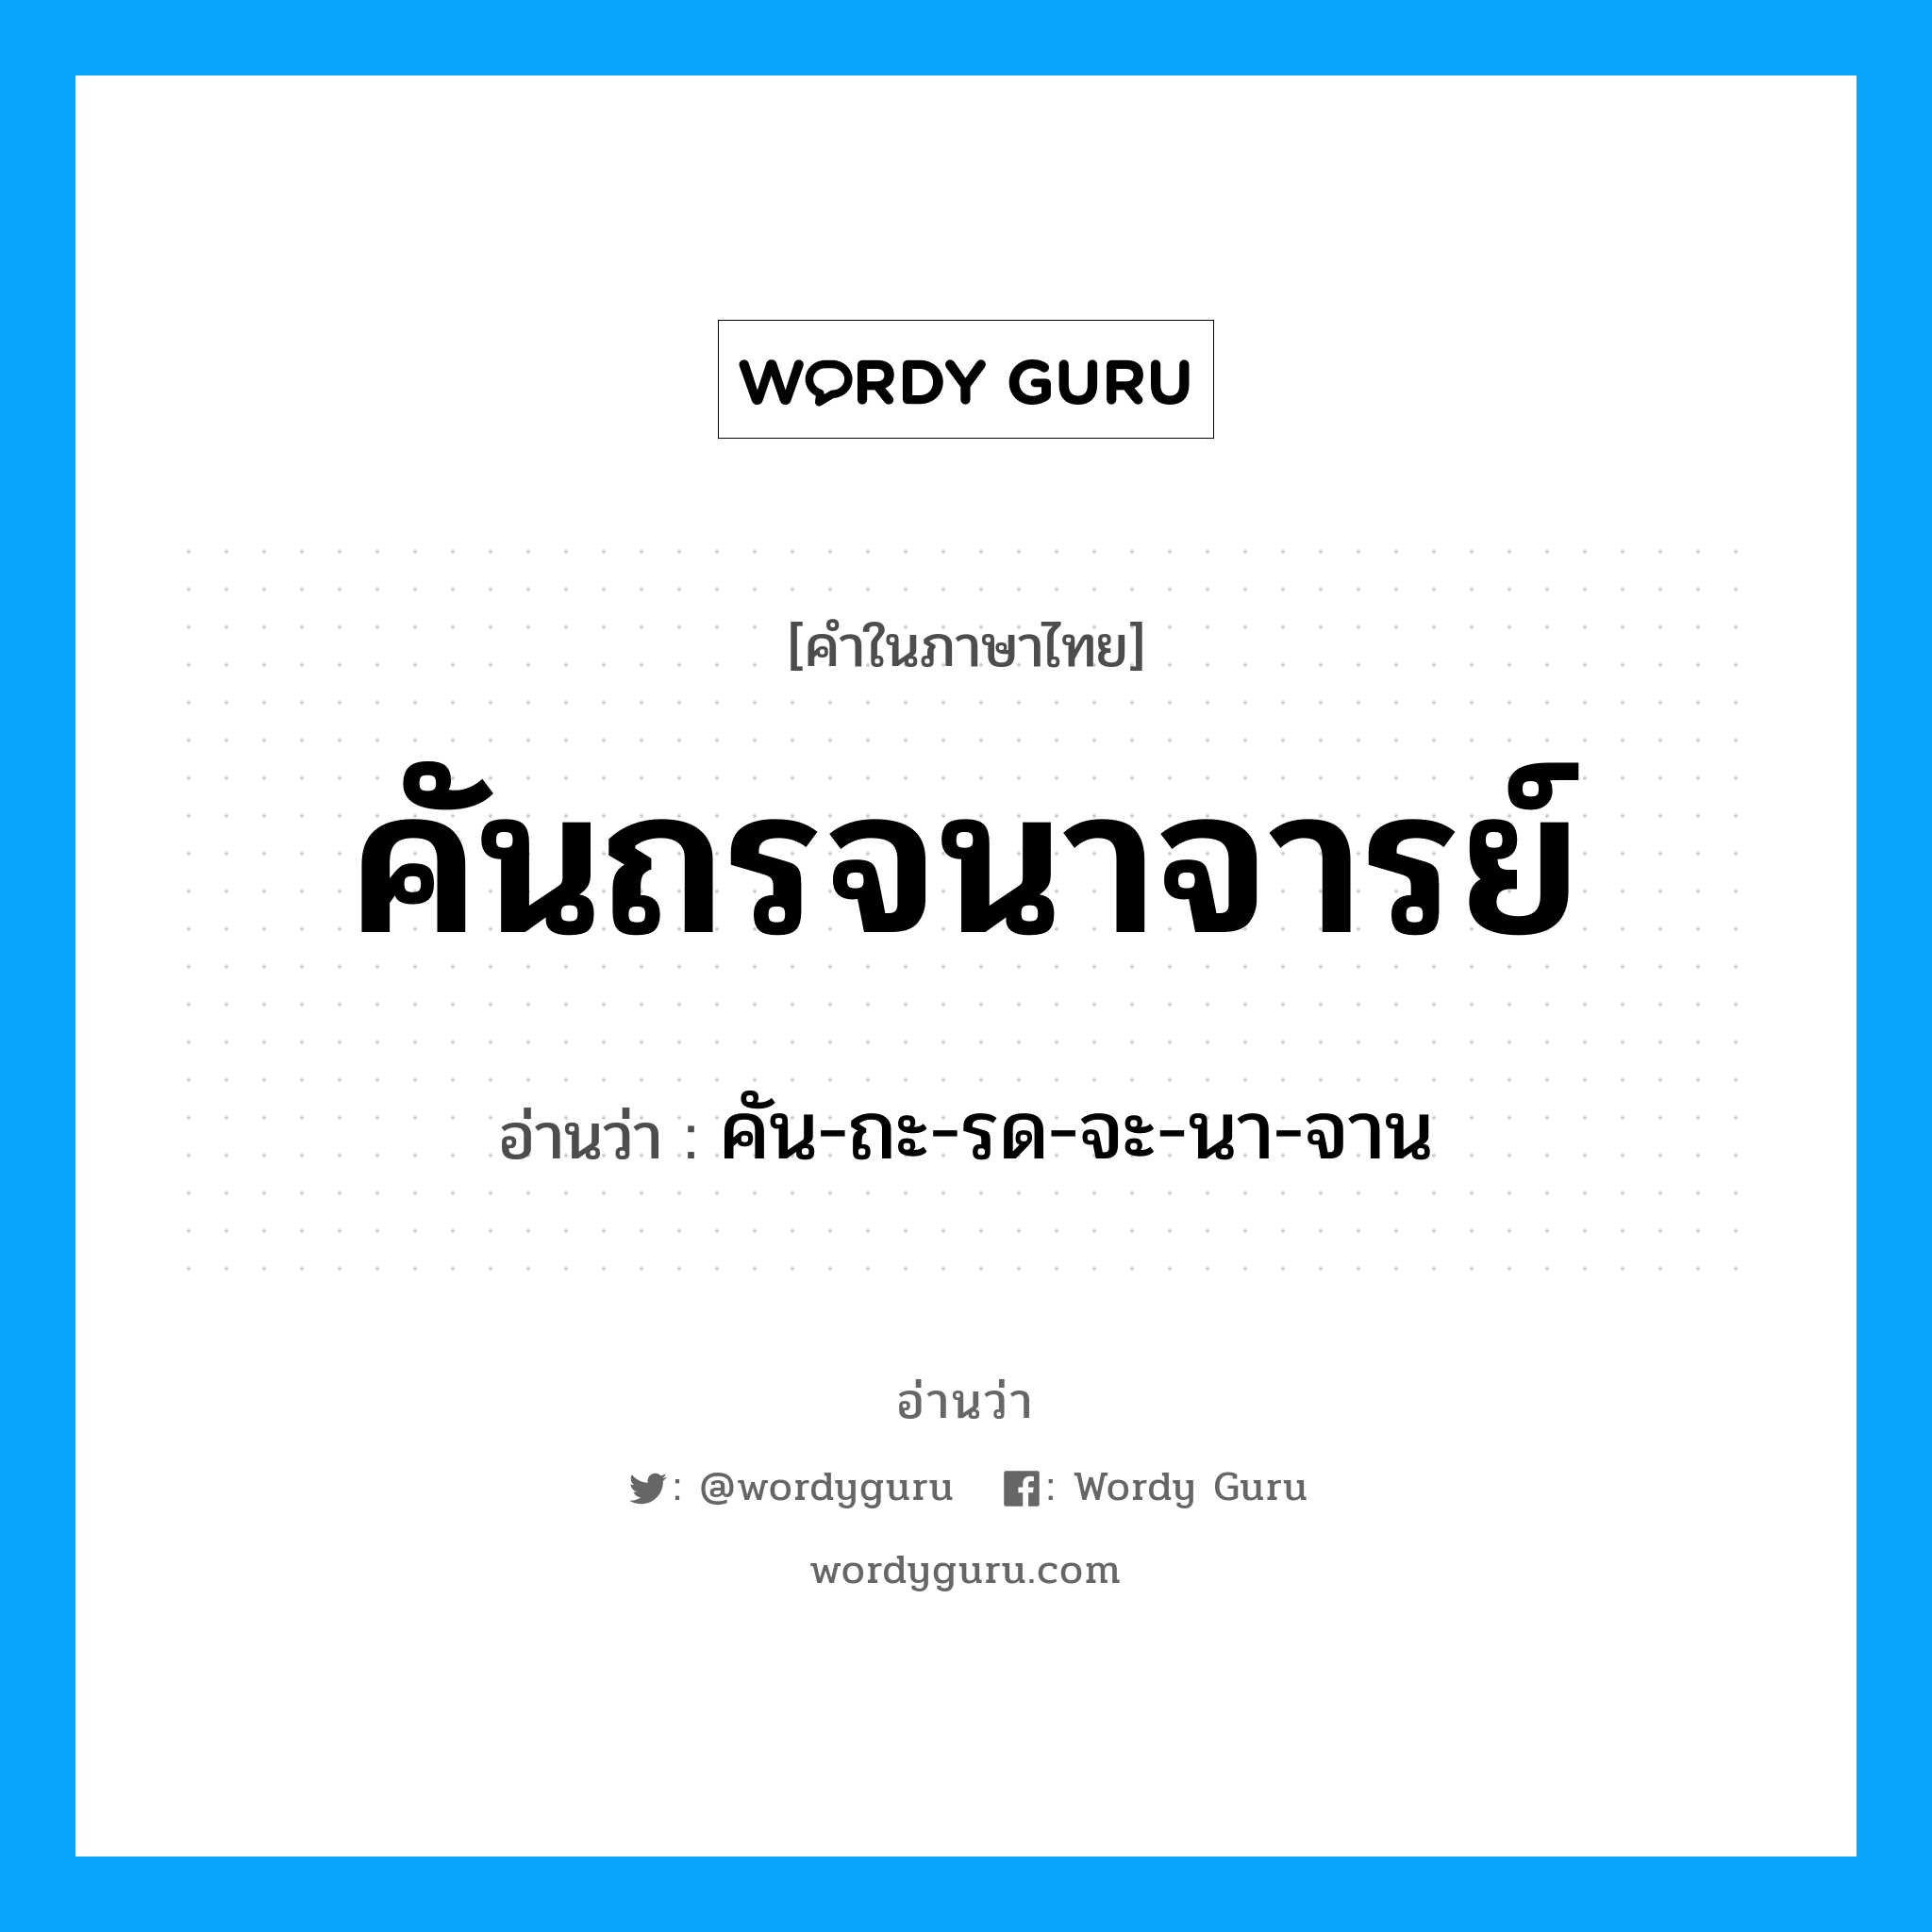 คัน-ถะ-รด-จะ-นา-จาน เป็นคำอ่านของคำไหน?, คำในภาษาไทย คัน-ถะ-รด-จะ-นา-จาน อ่านว่า คันถรจนาจารย์